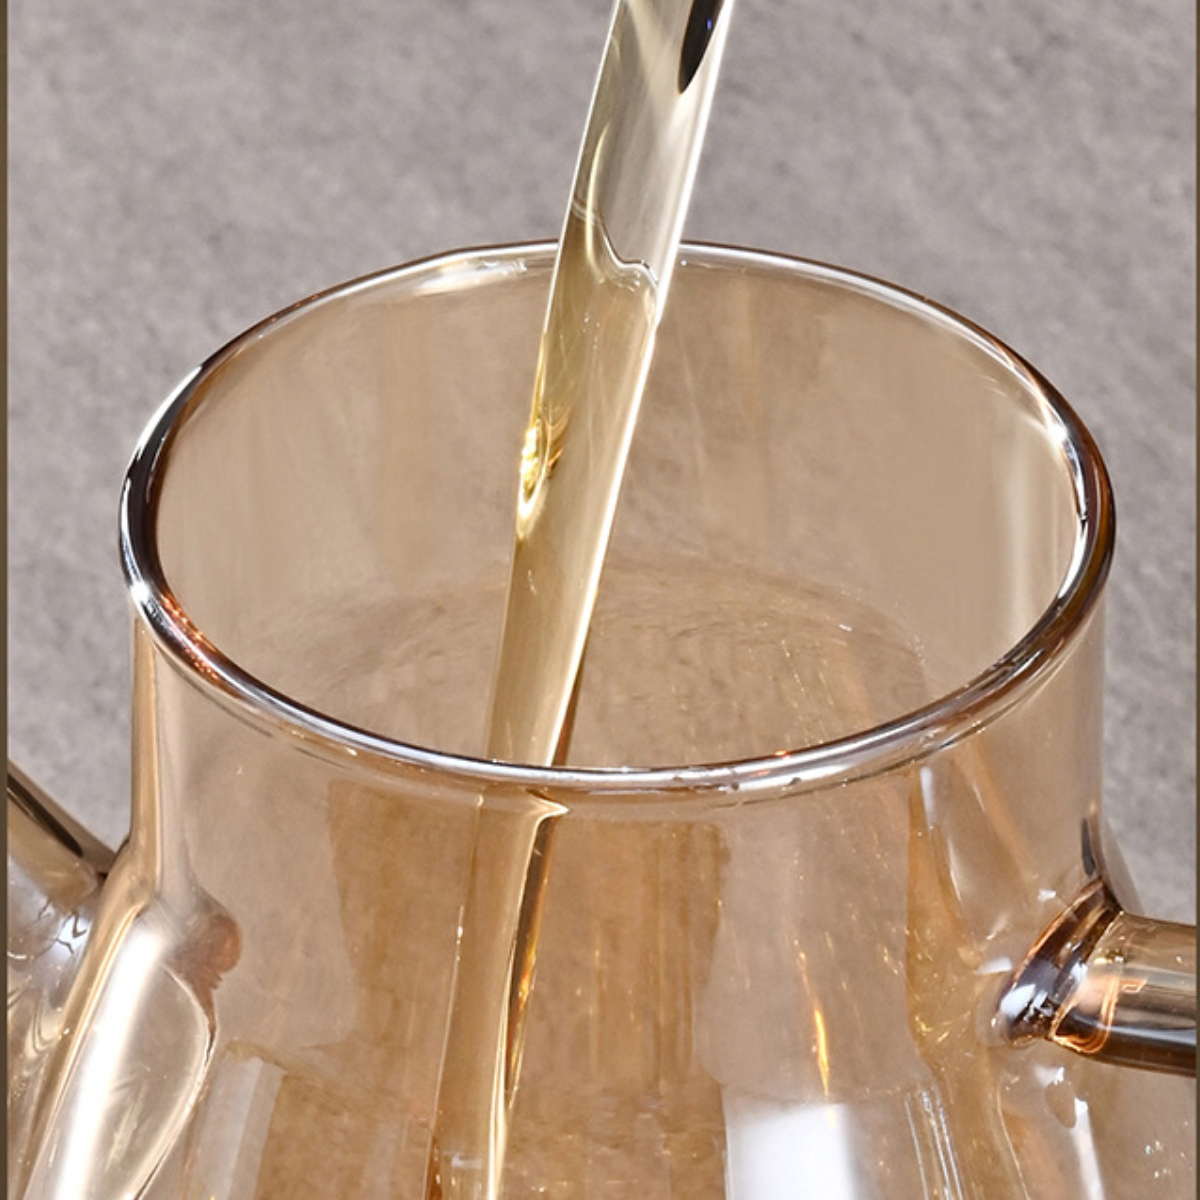 UWOT Kein Ölaustritt, Glasadlerschnabel-Öltopf: Korrosionsbeständig Glas, Säure-Laugenfest, Mehrzweck-Ölkännchen Bleifreies